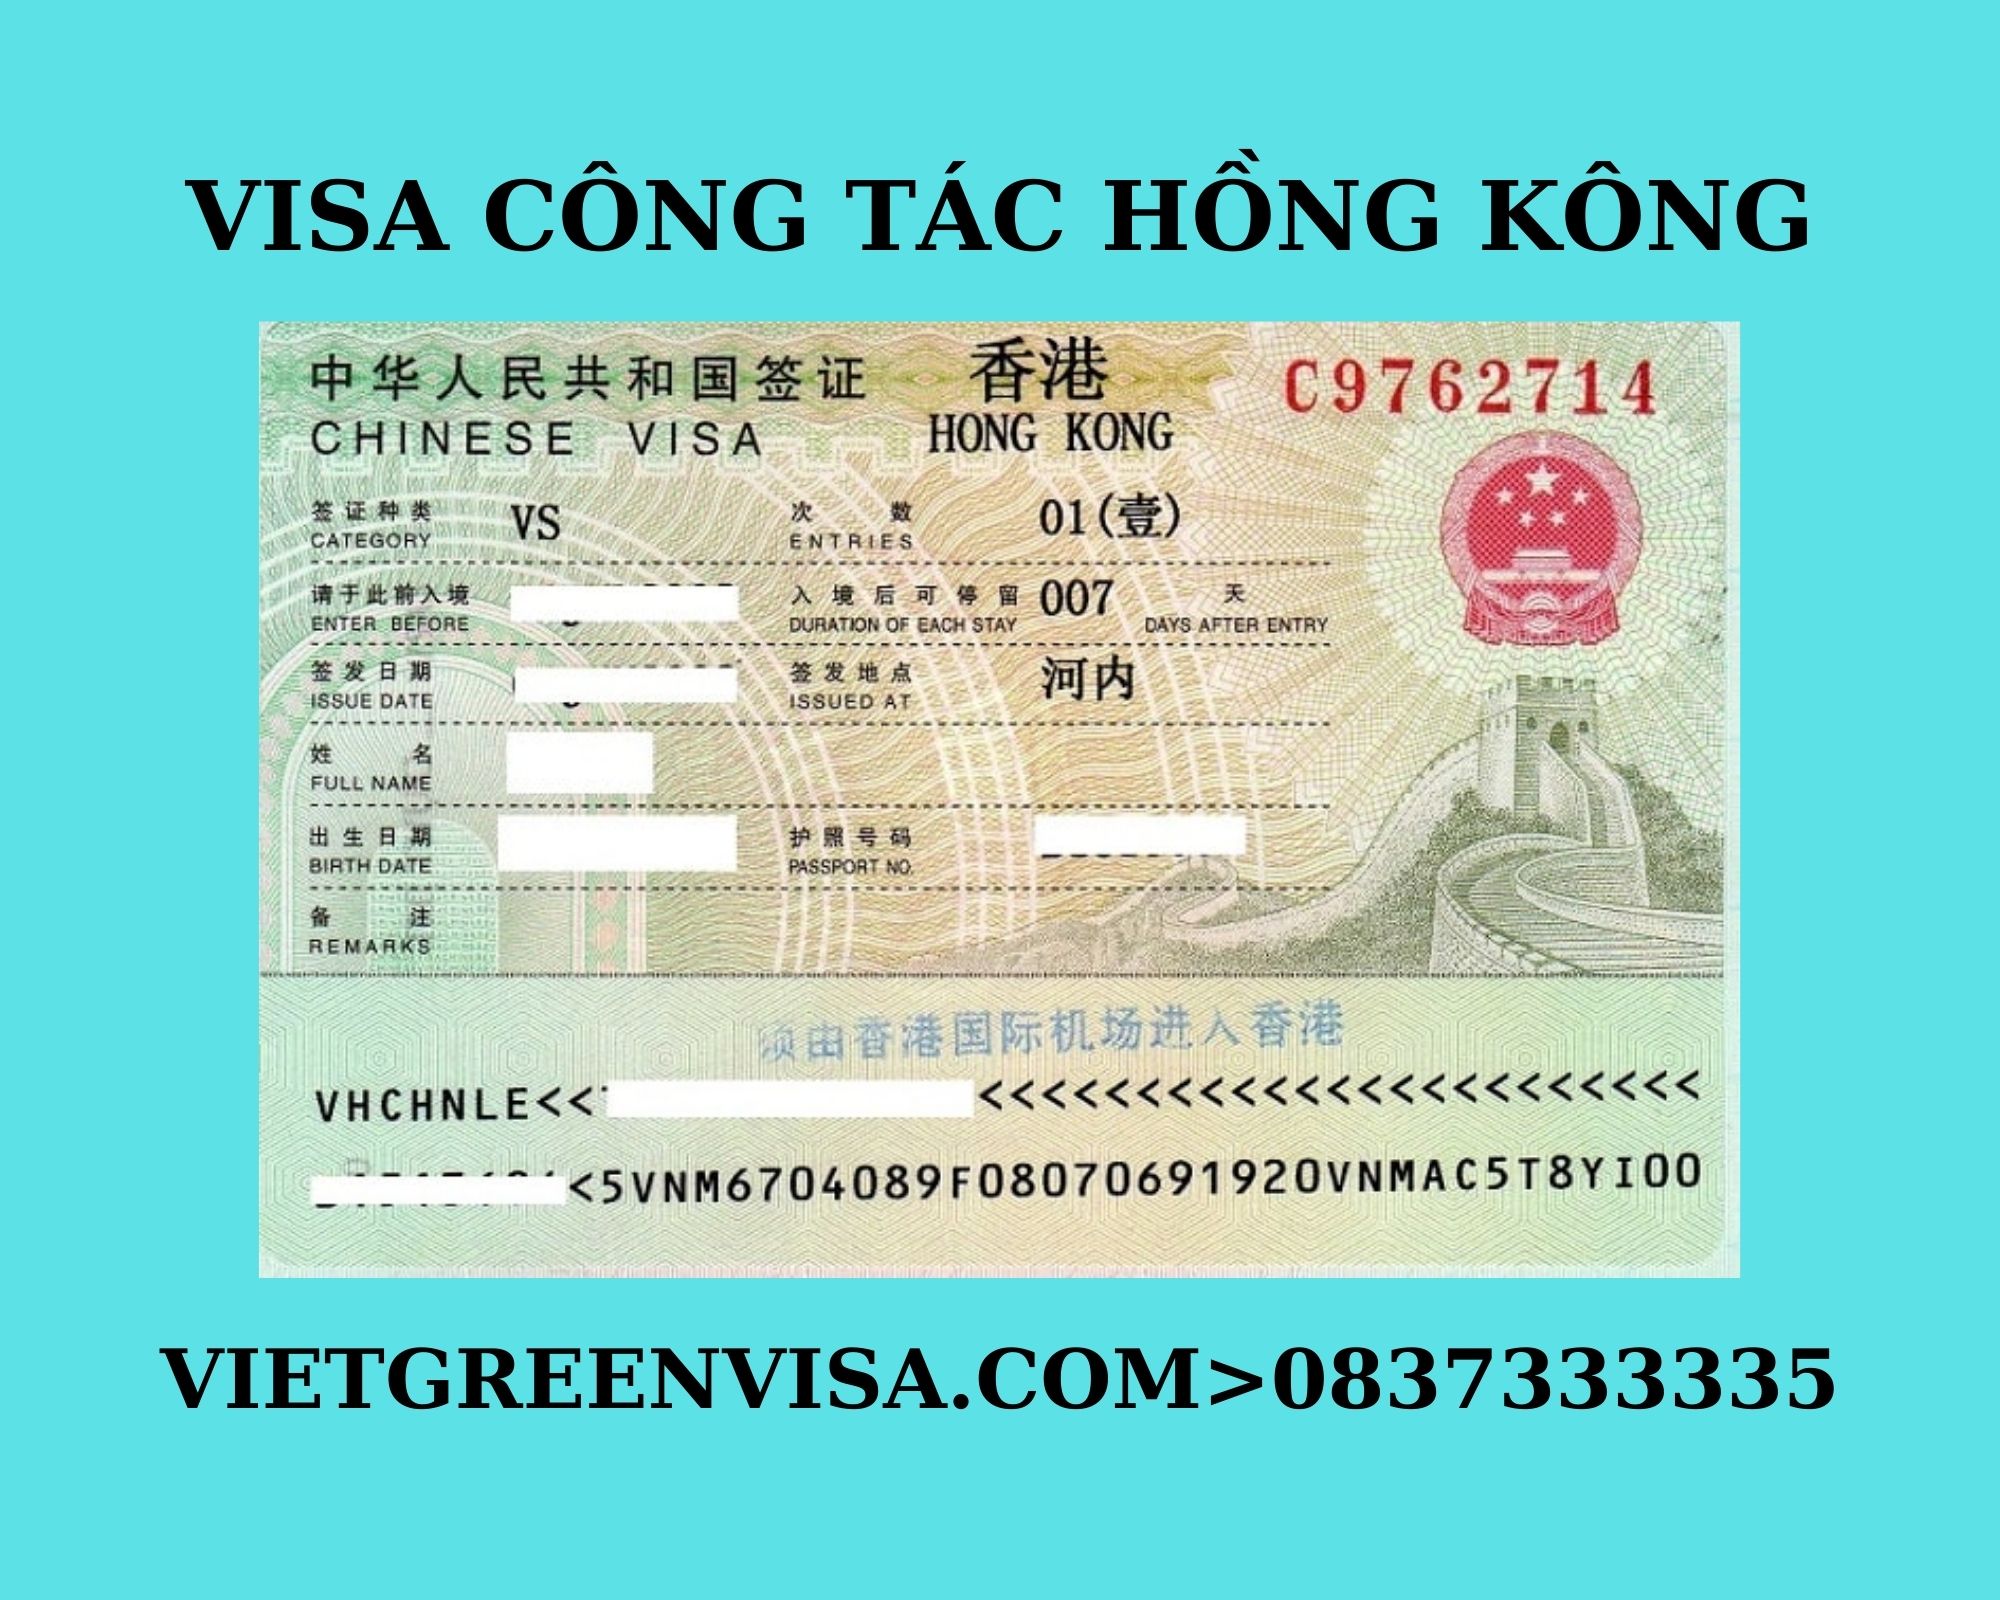  Dịch vụ xin visa du lịch Hồng Kông uy tín , Làm visa du lịch Hồng Kông , Thủ tục xin visa đi Hồng Kông du lịch, Dịch vụ visa du lịch Hồng Kông trọn gói